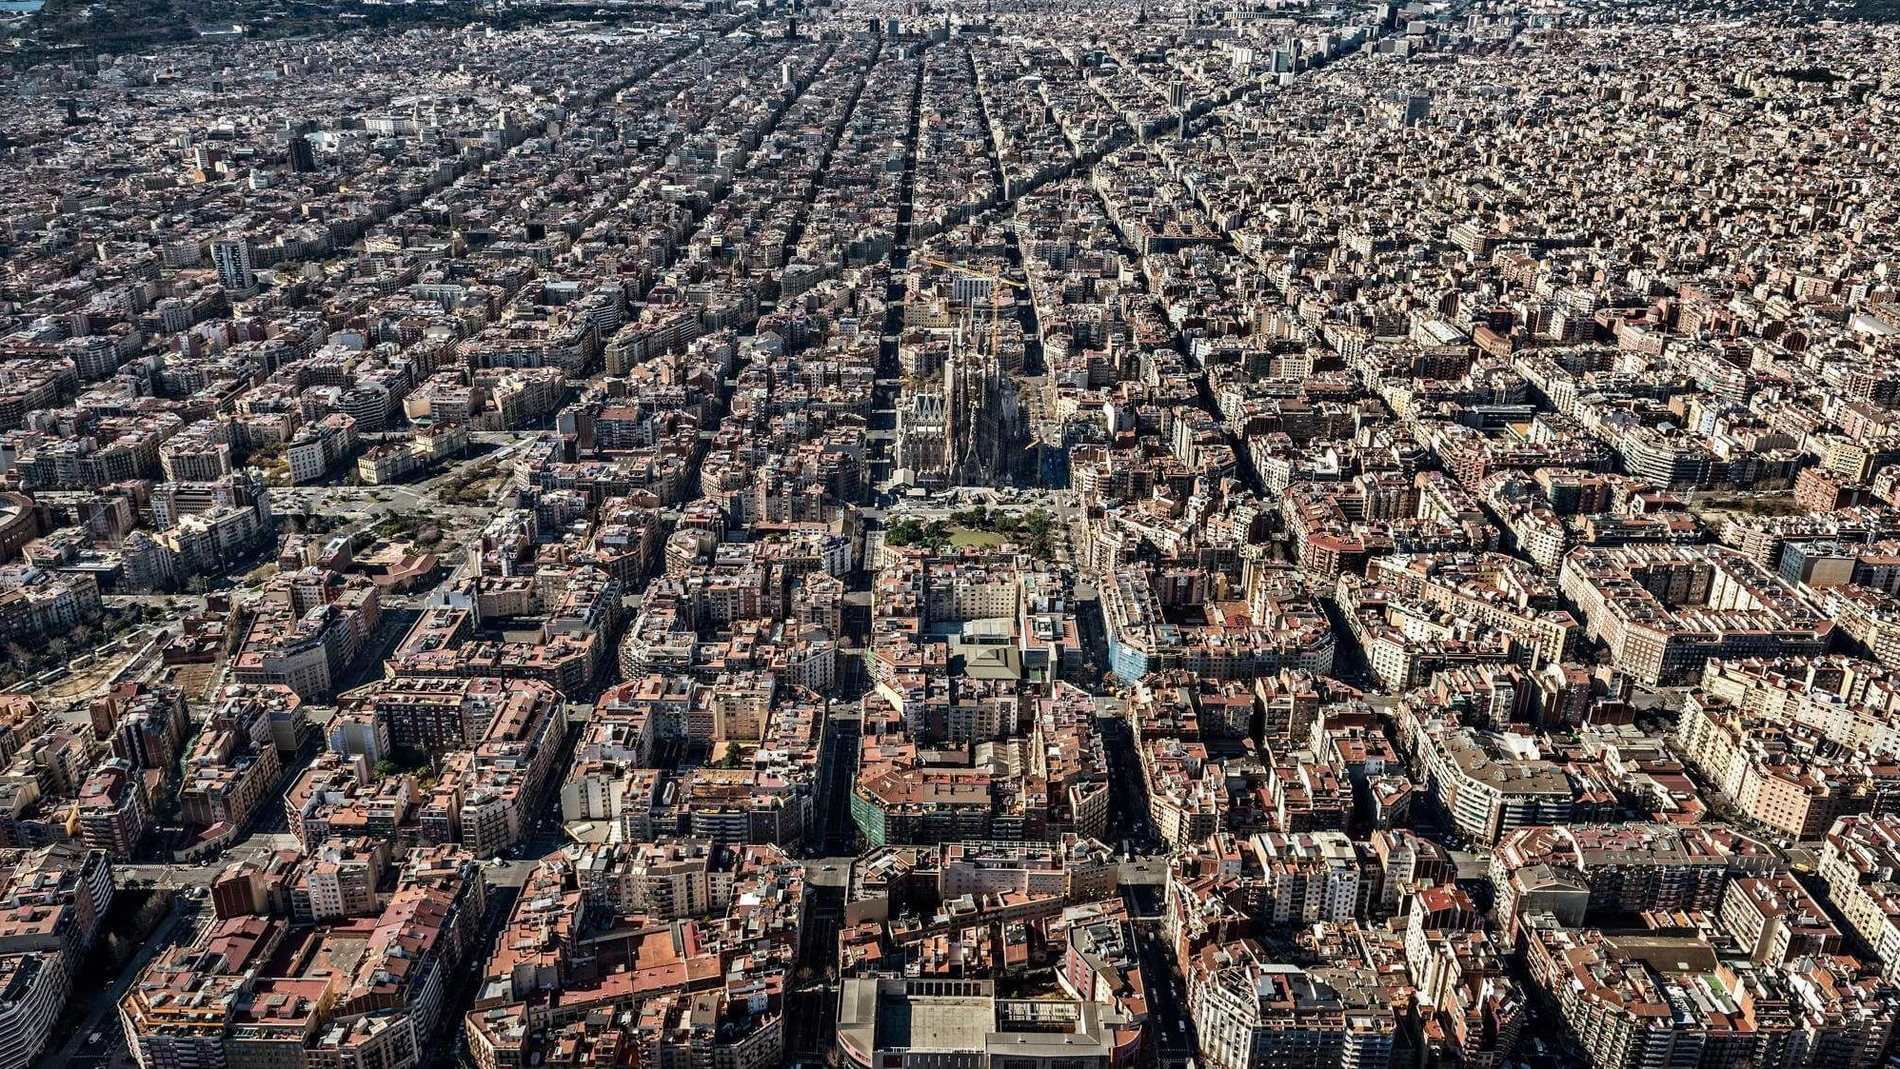 La media de personas por domicilio en Barcelona es de 2,45